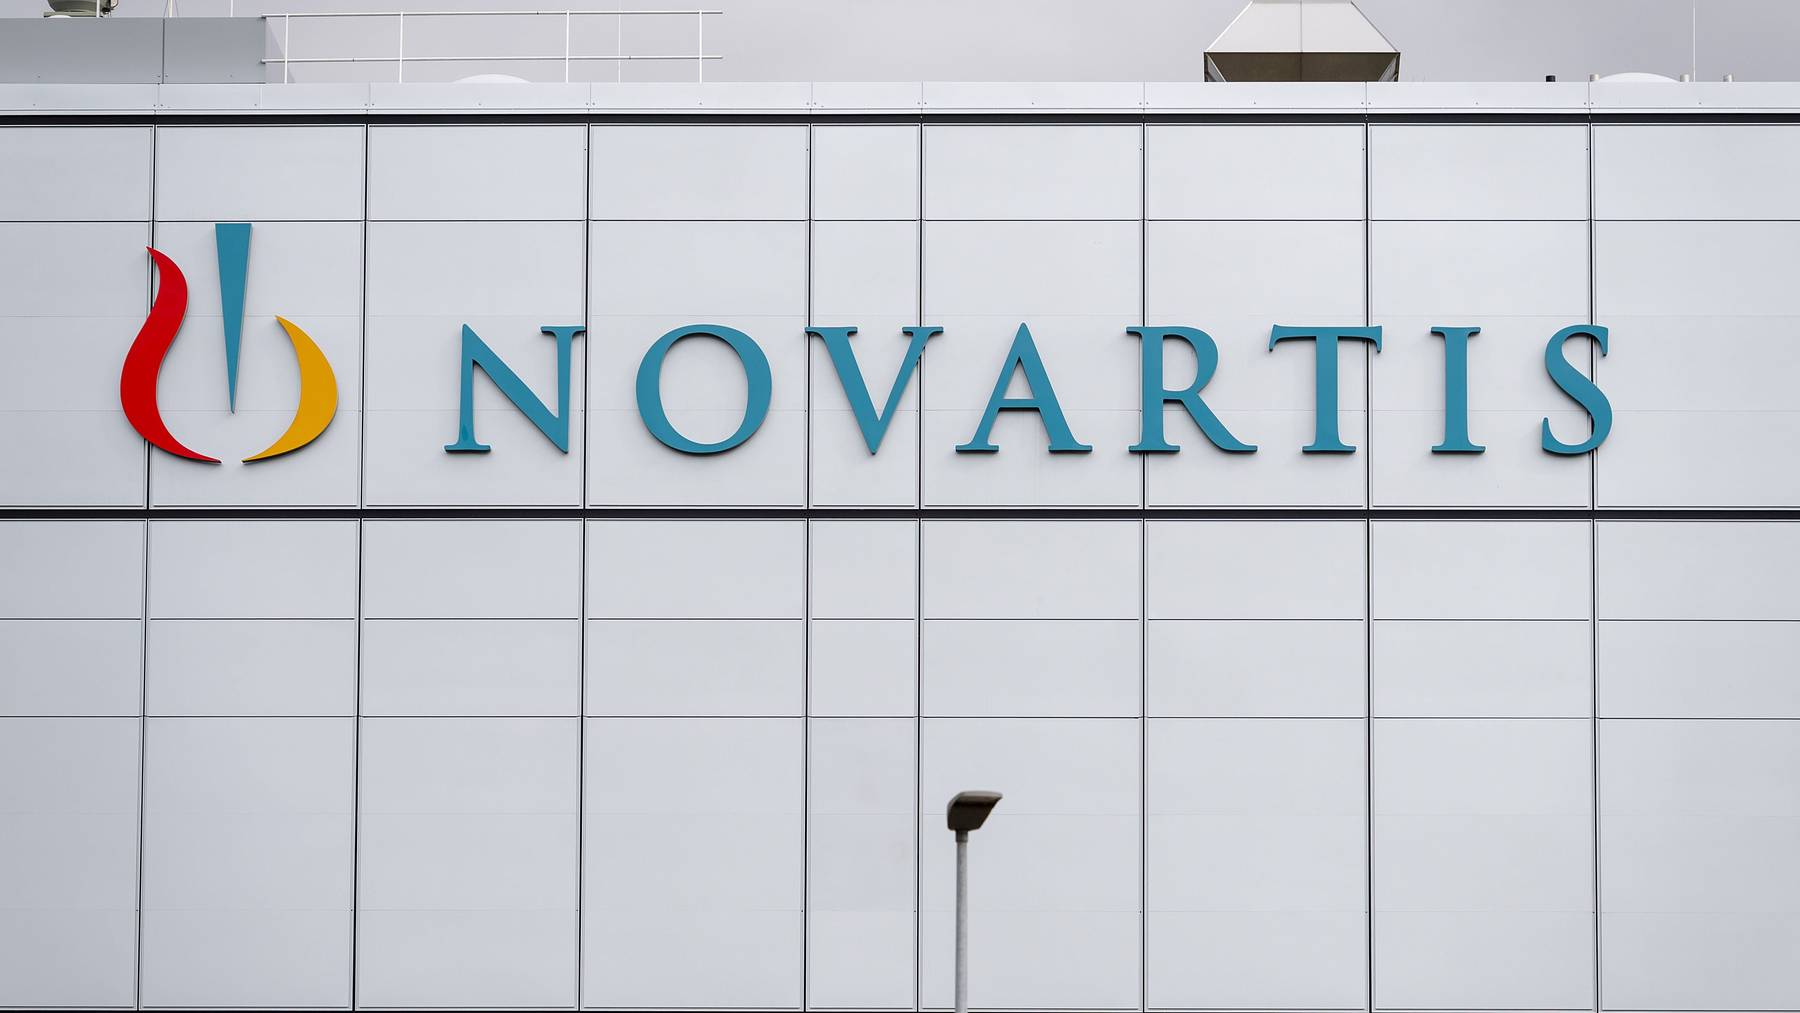 Der weltweit tätige Pharmakonzern Novartis hat seinen Hauptsitz in Basel.